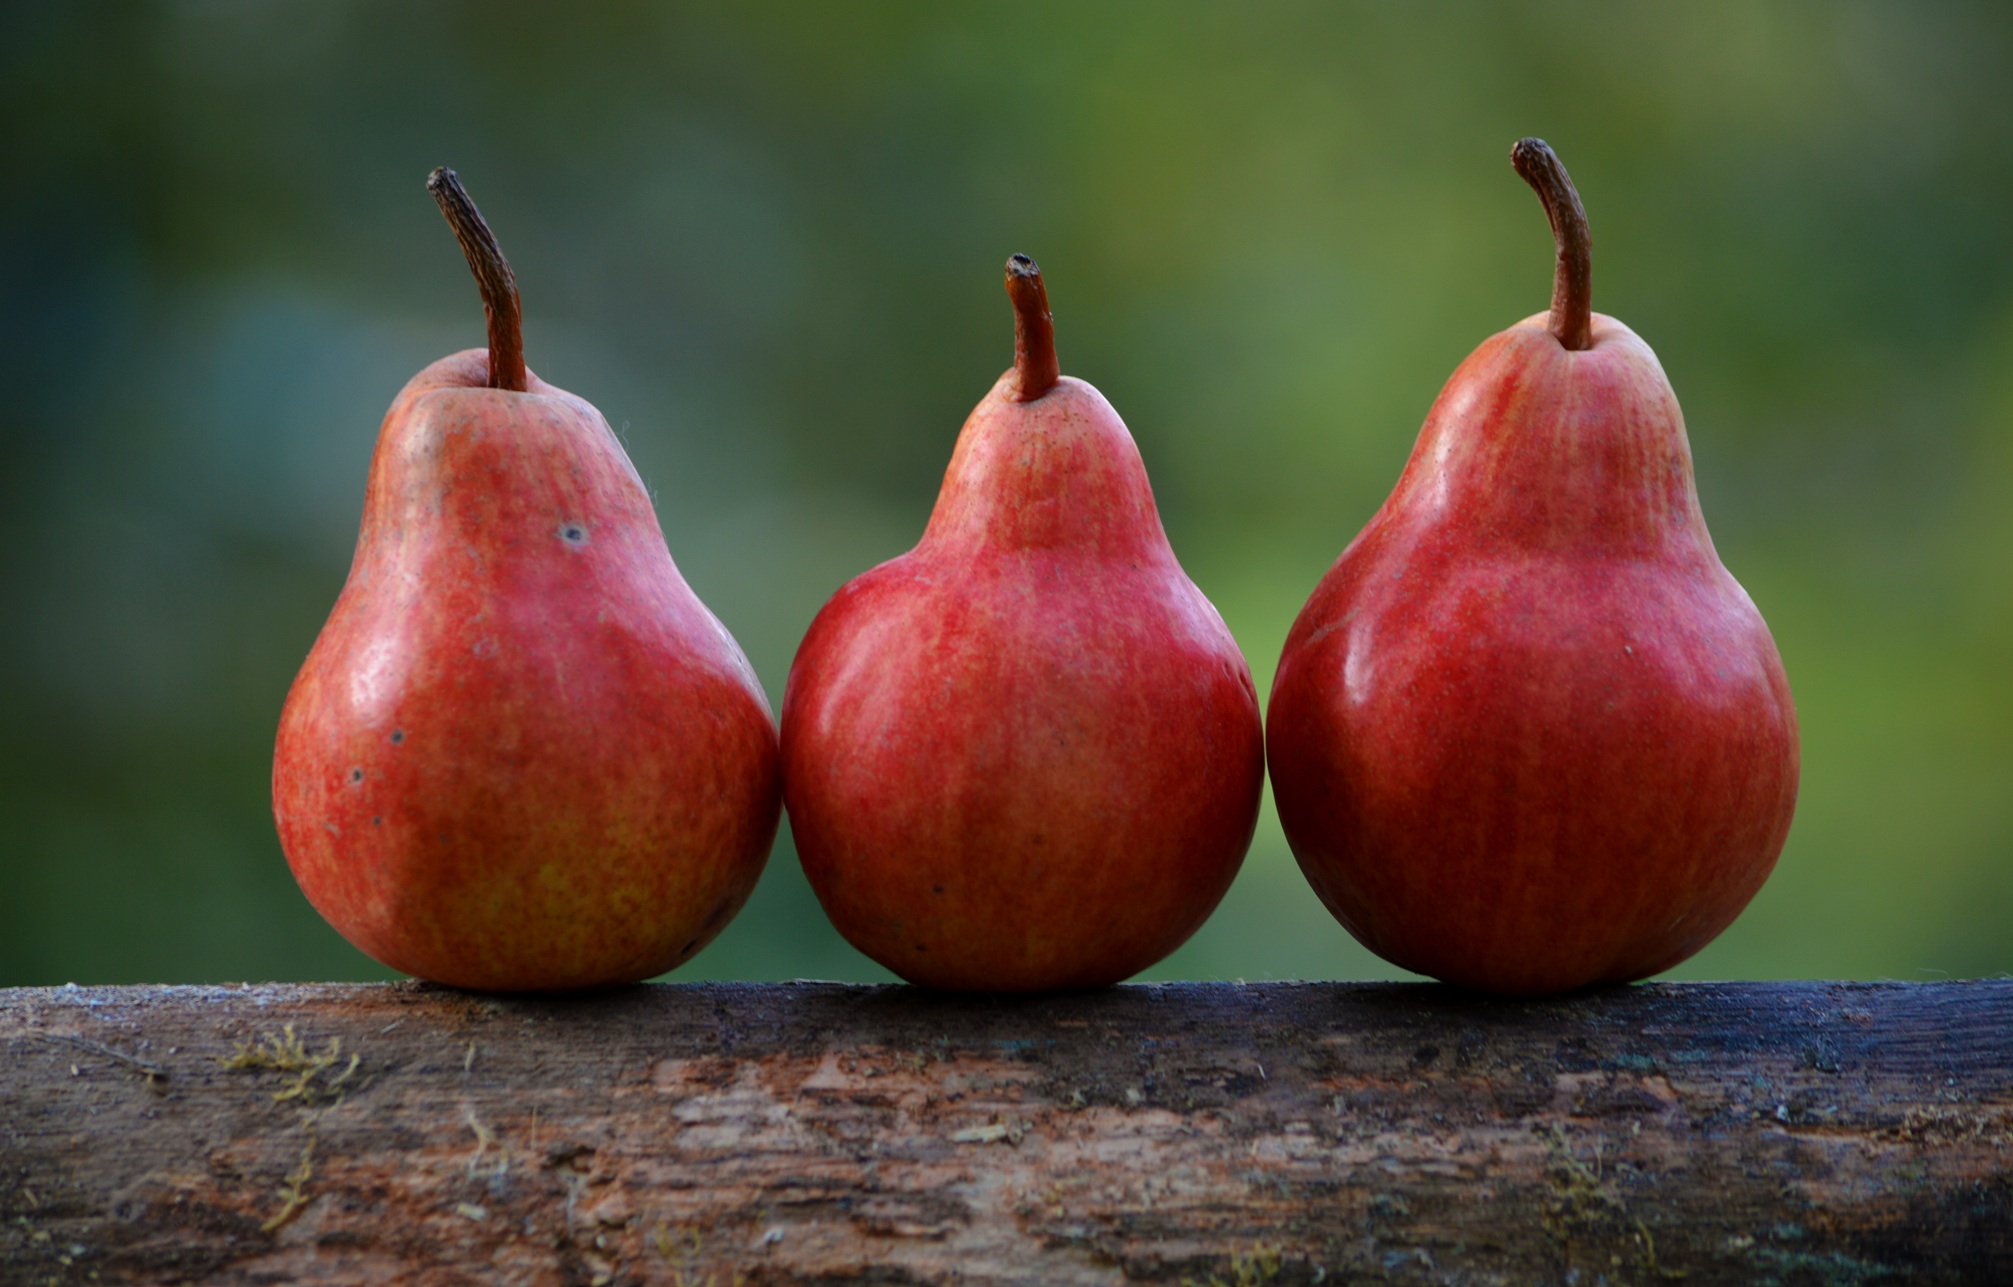 TTB federal definition cider pear apple